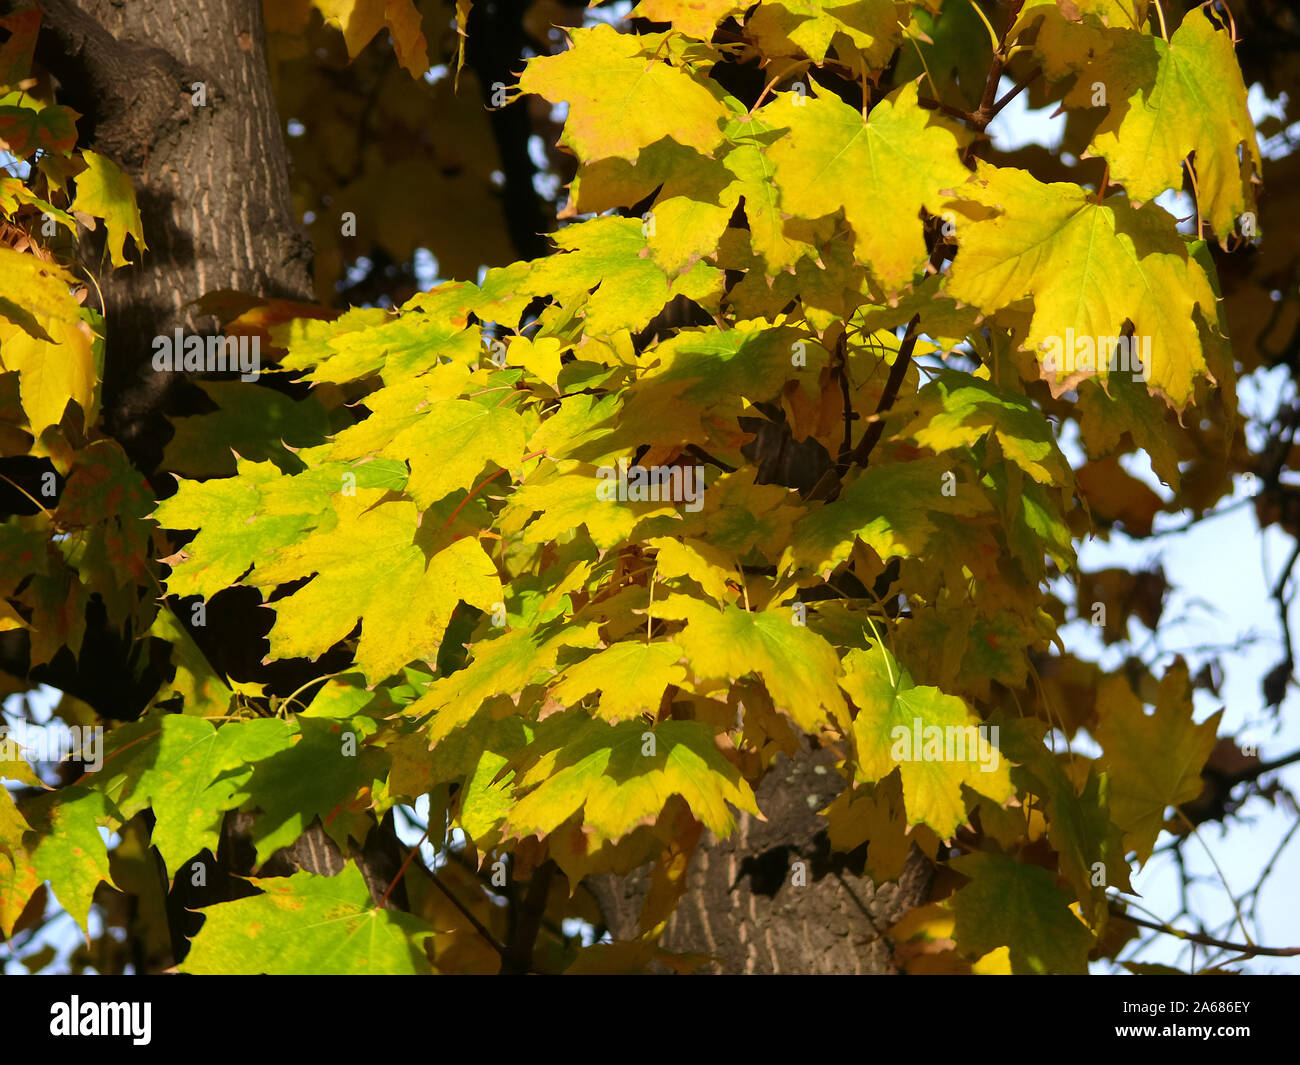 Maple, Ahorne, Acer, juhar Stock Photo